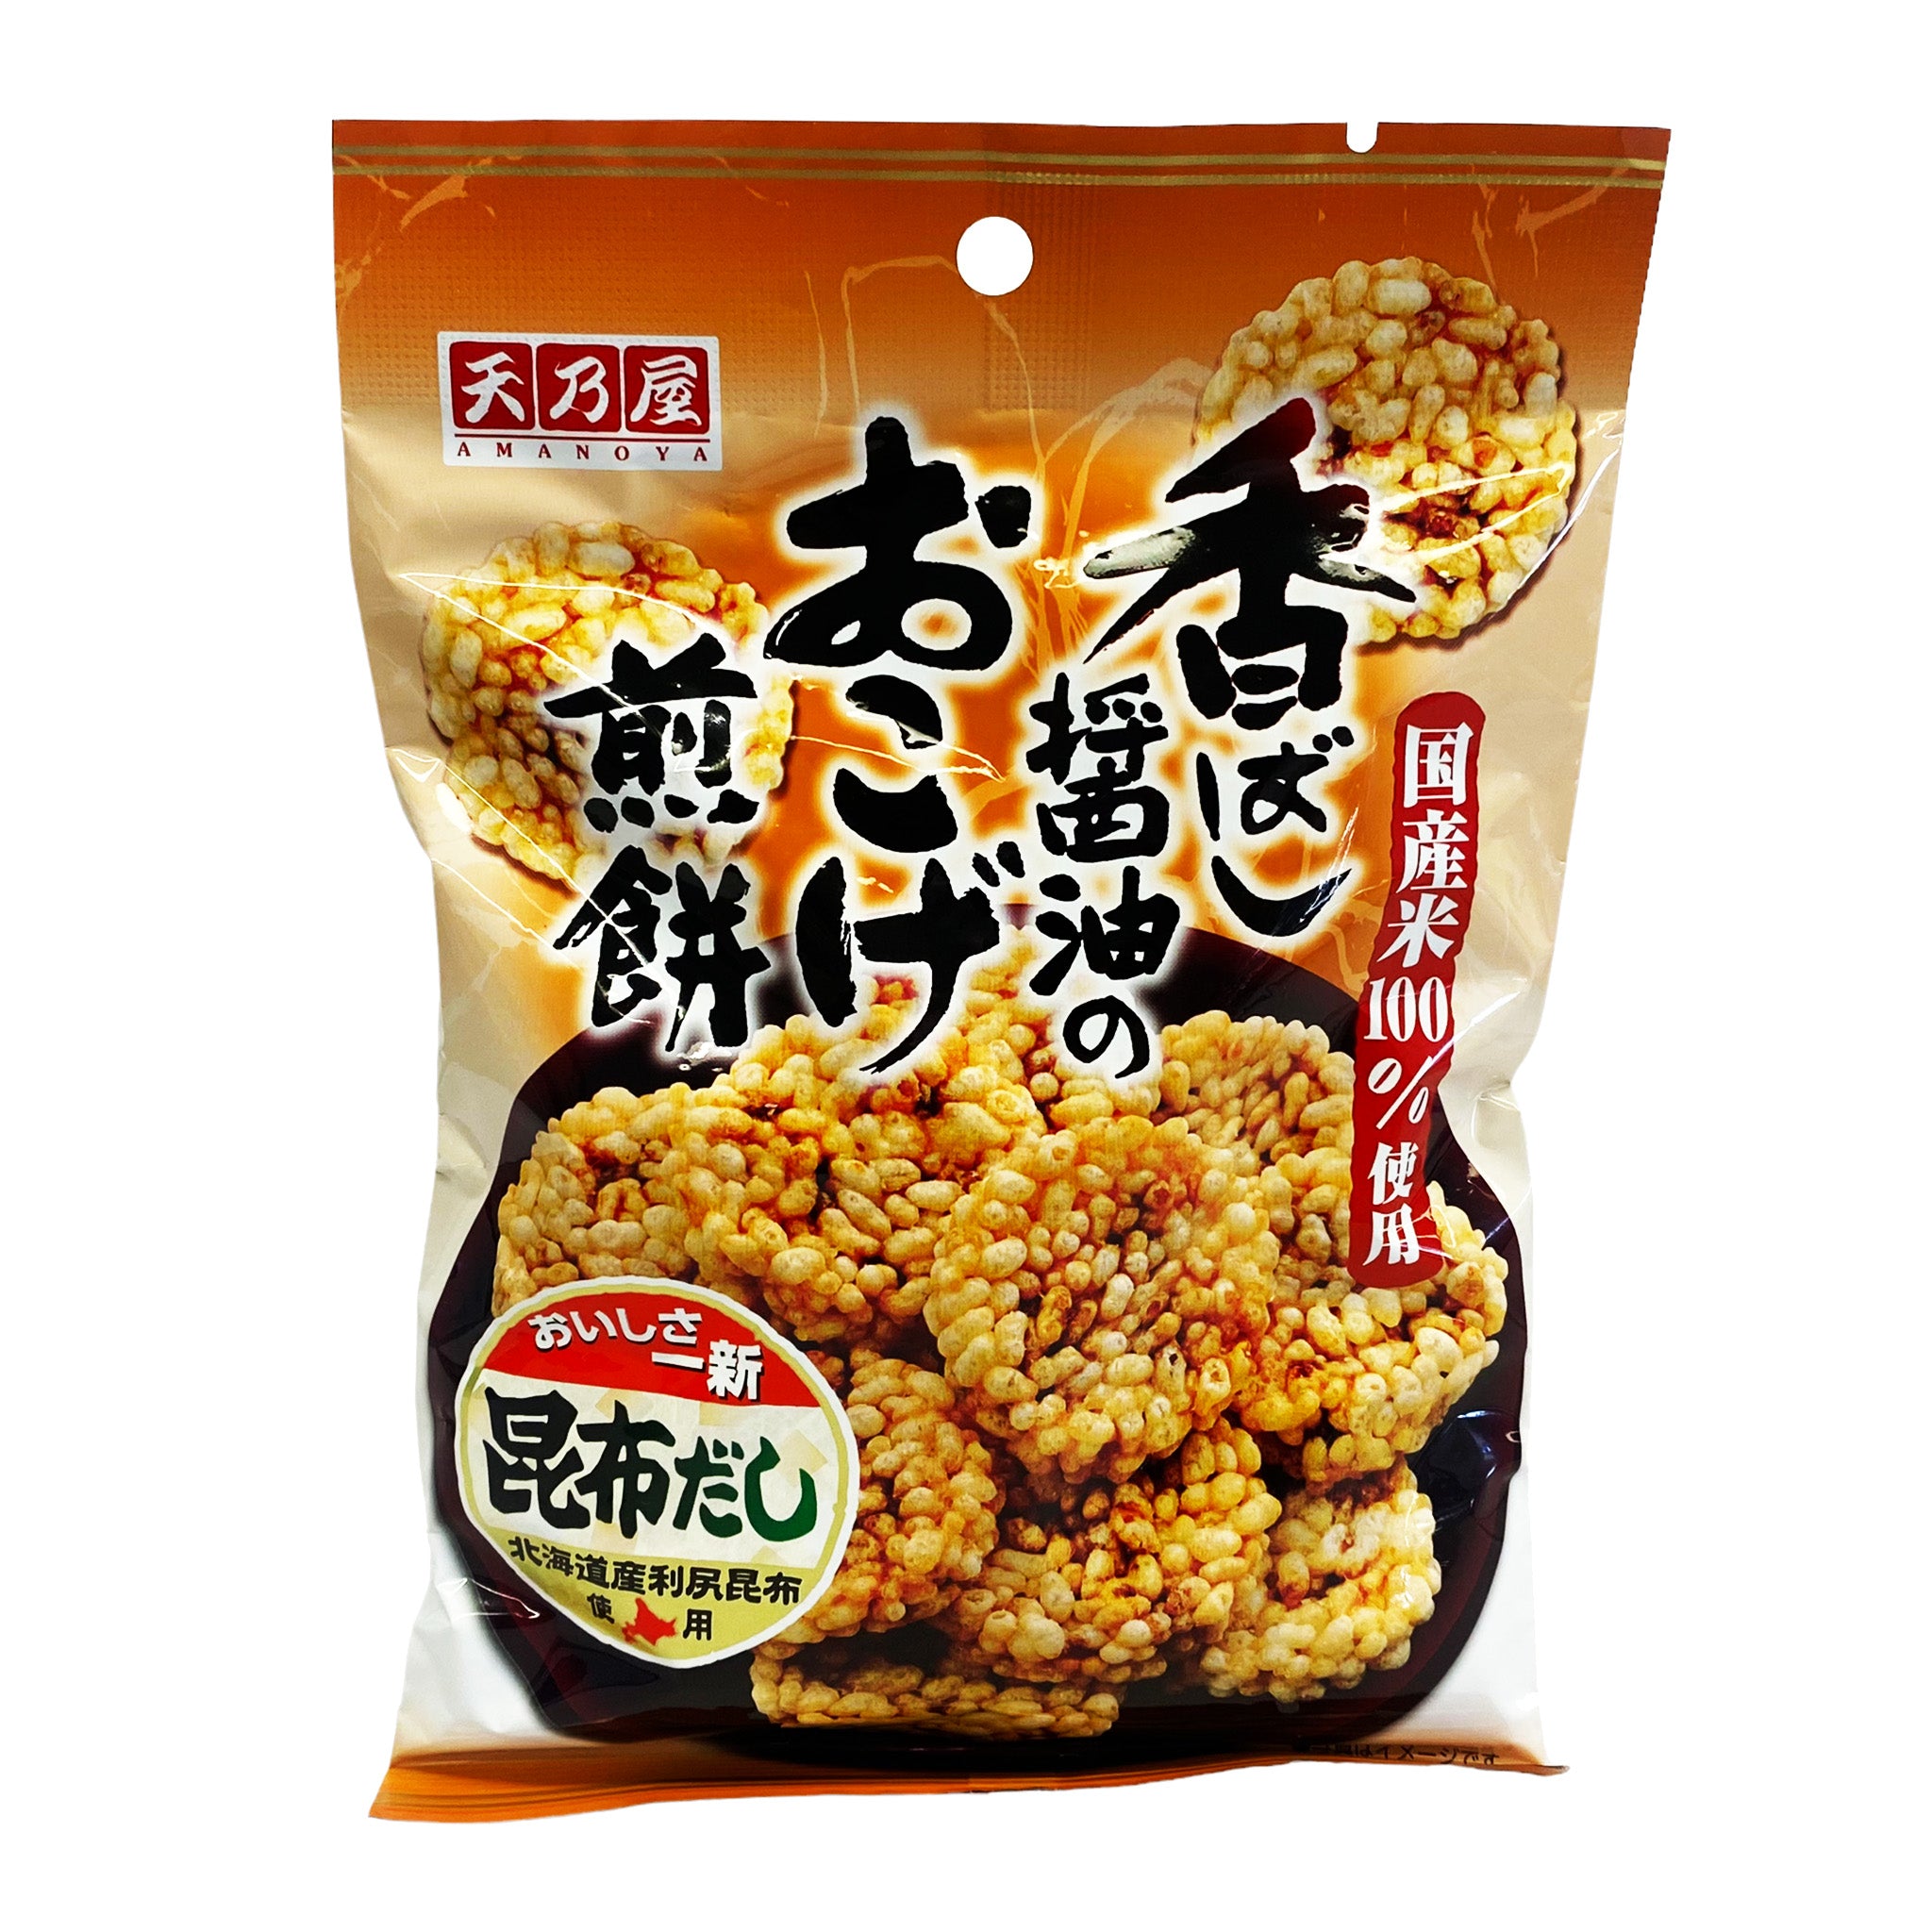 Amanoya Japanese Baked Rice Cracker Kobashi Shoyu no Okoge Senbei 1.41oz  (40g) - Just Asian Food